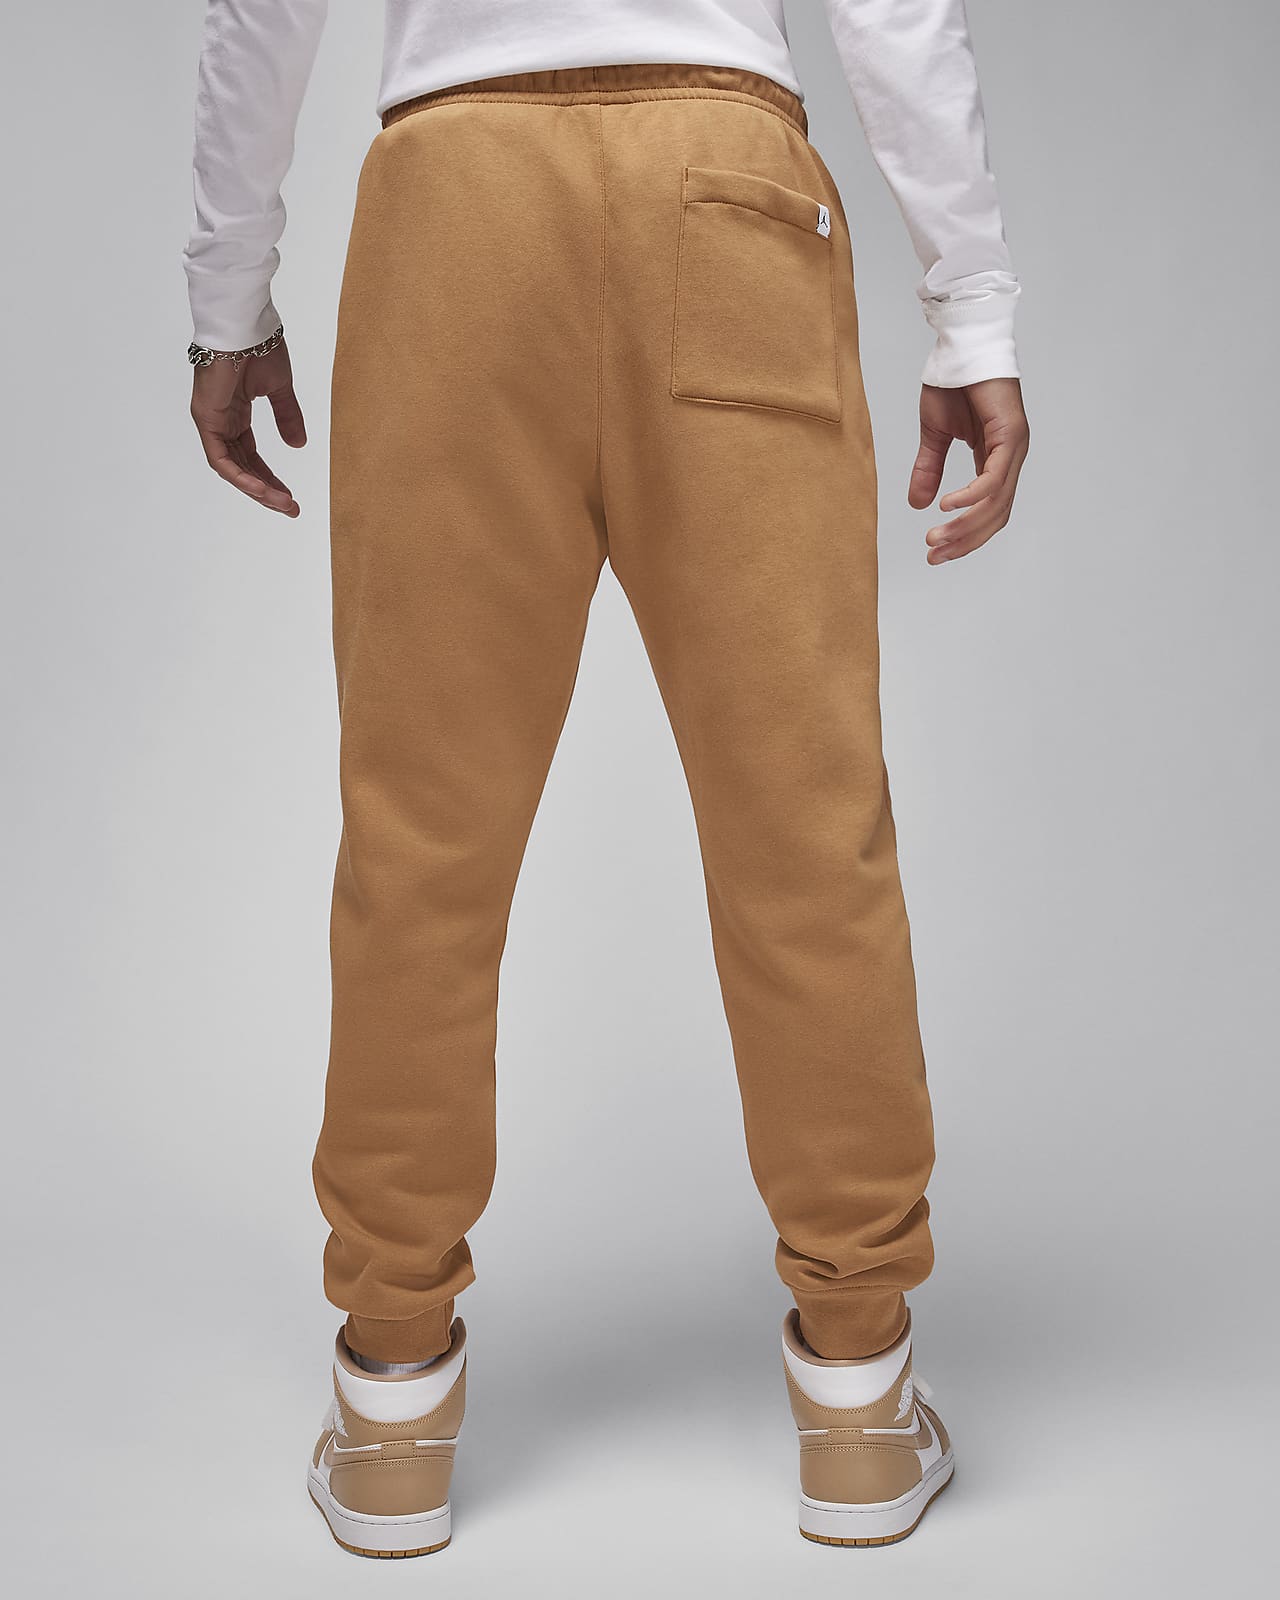 Jordan Essentials Men's Fleece Pants.